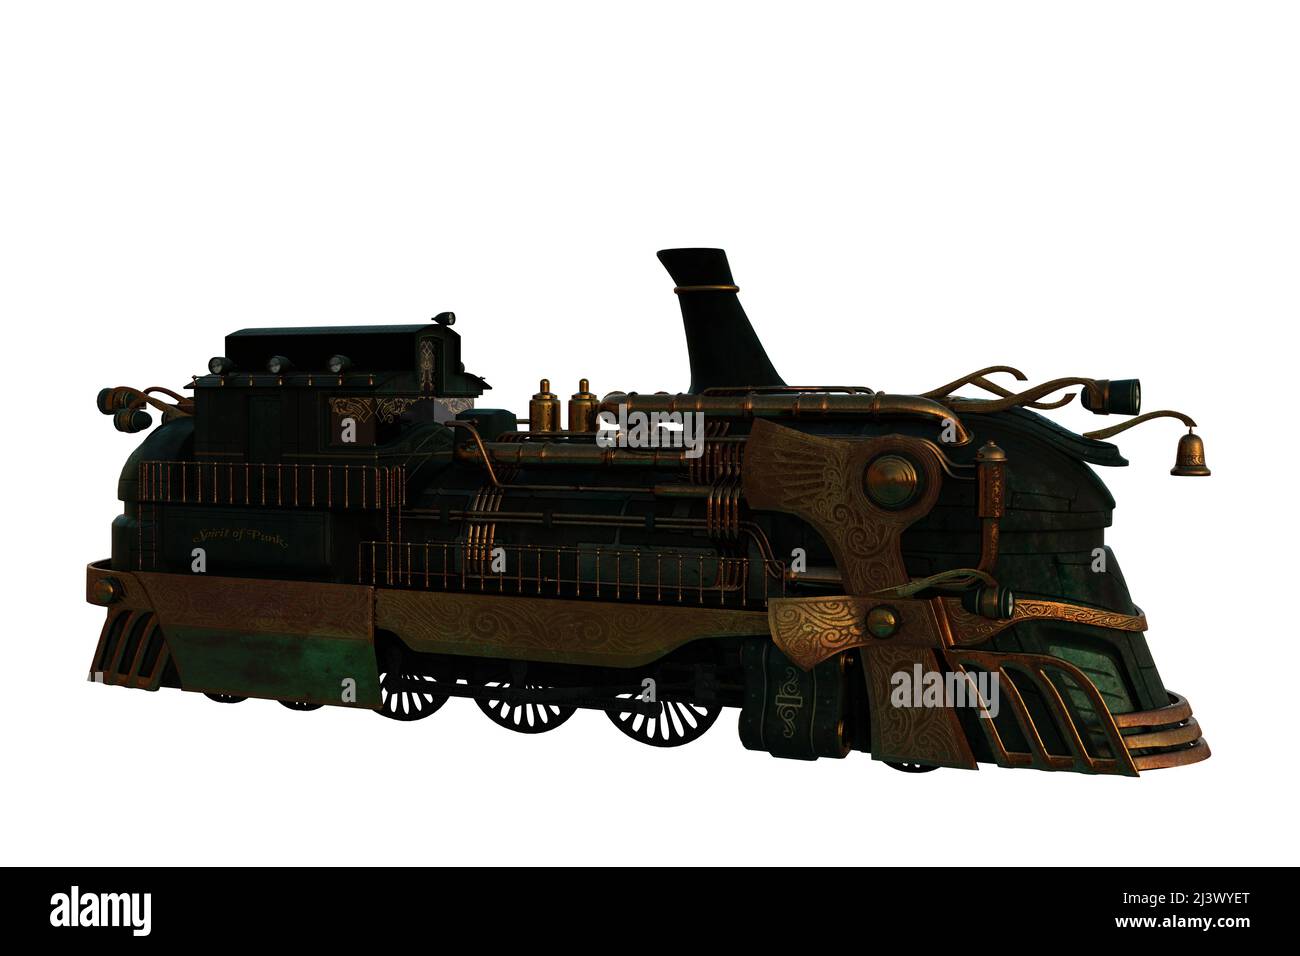 Un moteur de train à vapeur de style Steampunk. 3D illustration isolée sur fond blanc avec un masque. Banque D'Images